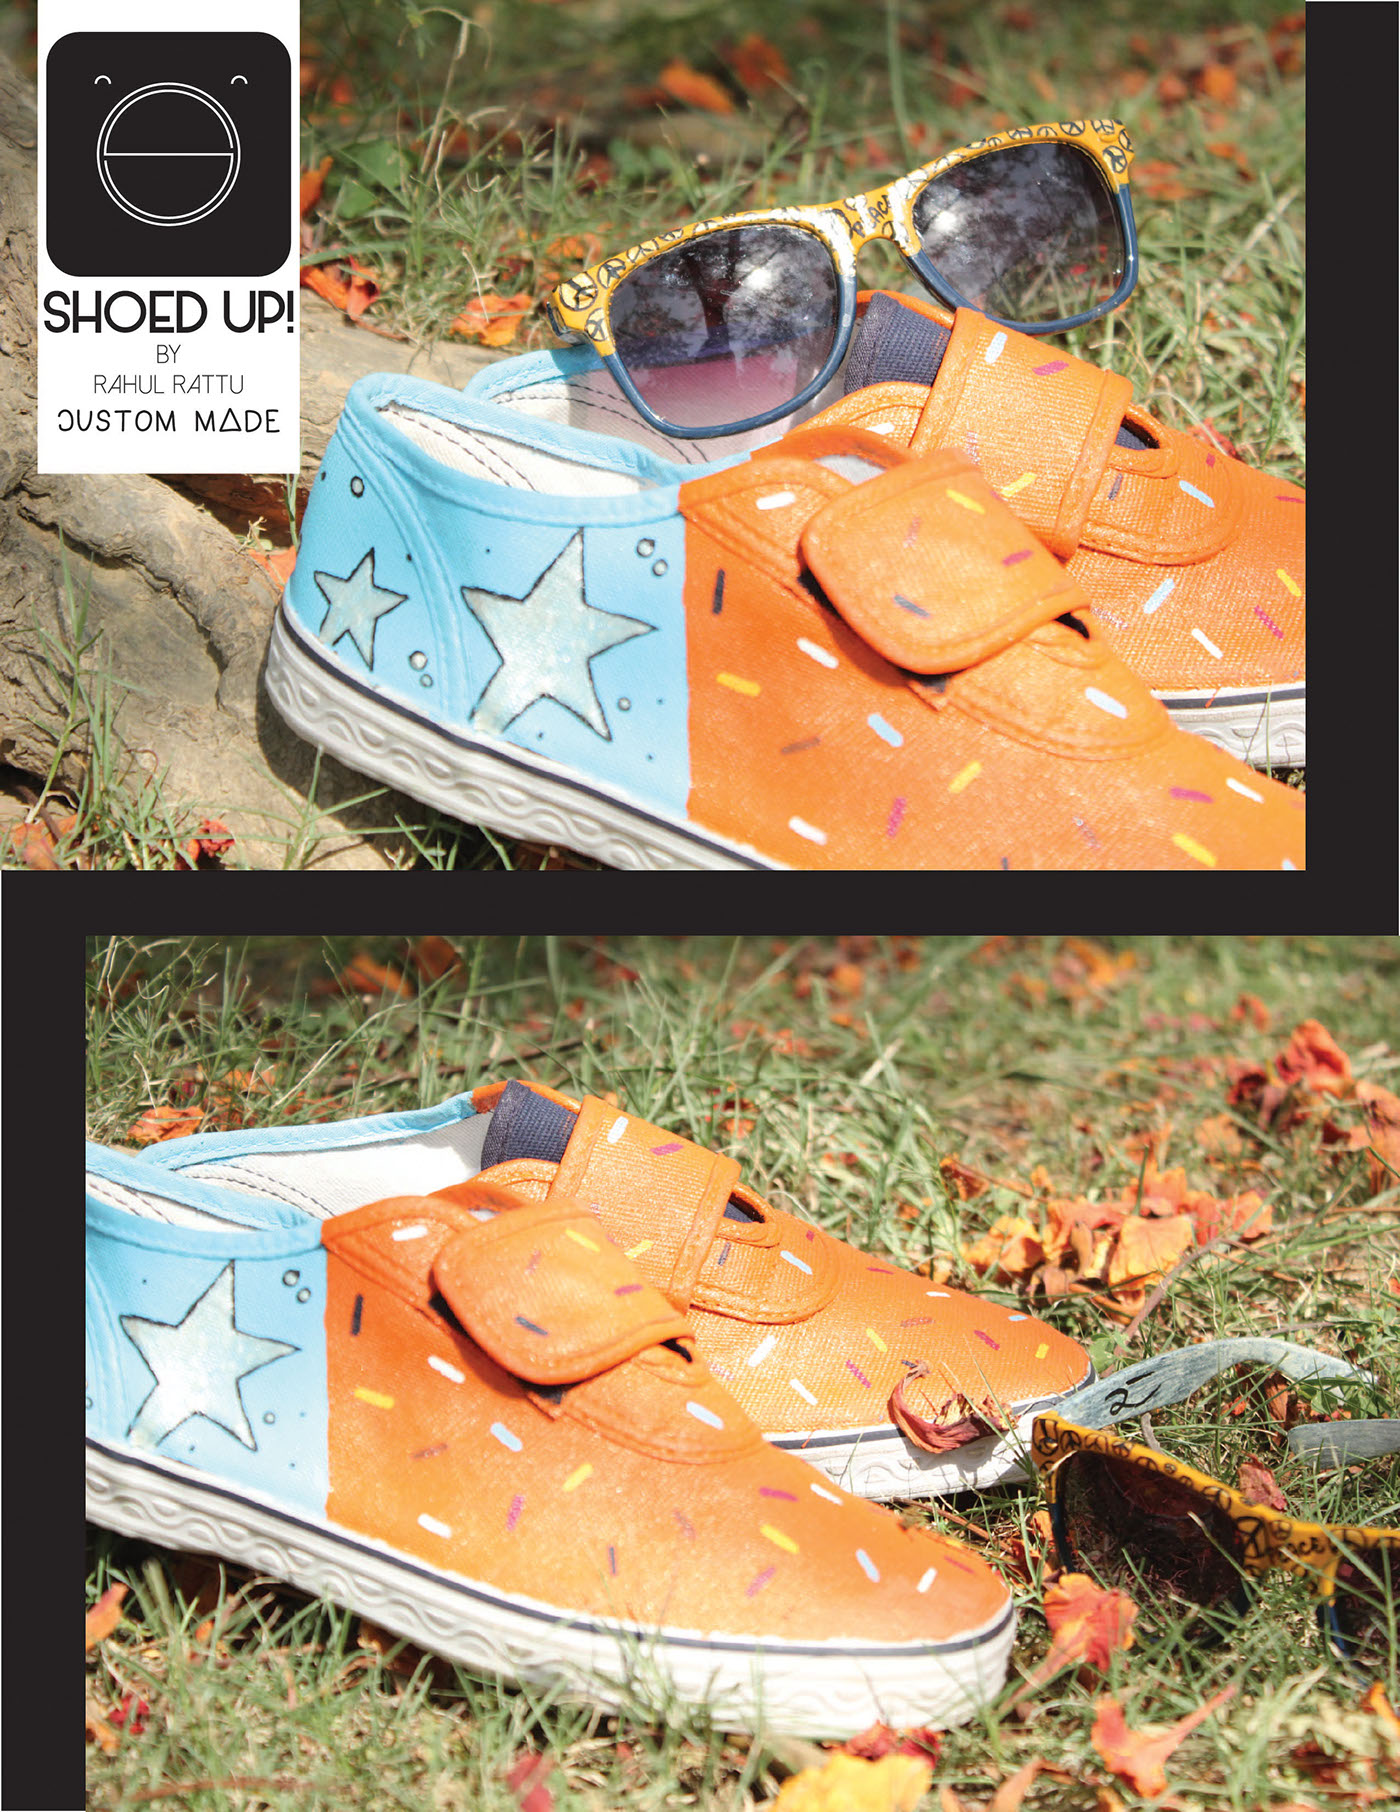 customised custom made shoedup shoedupbyrahul shoes canvas Hand Painted stars sprinkles